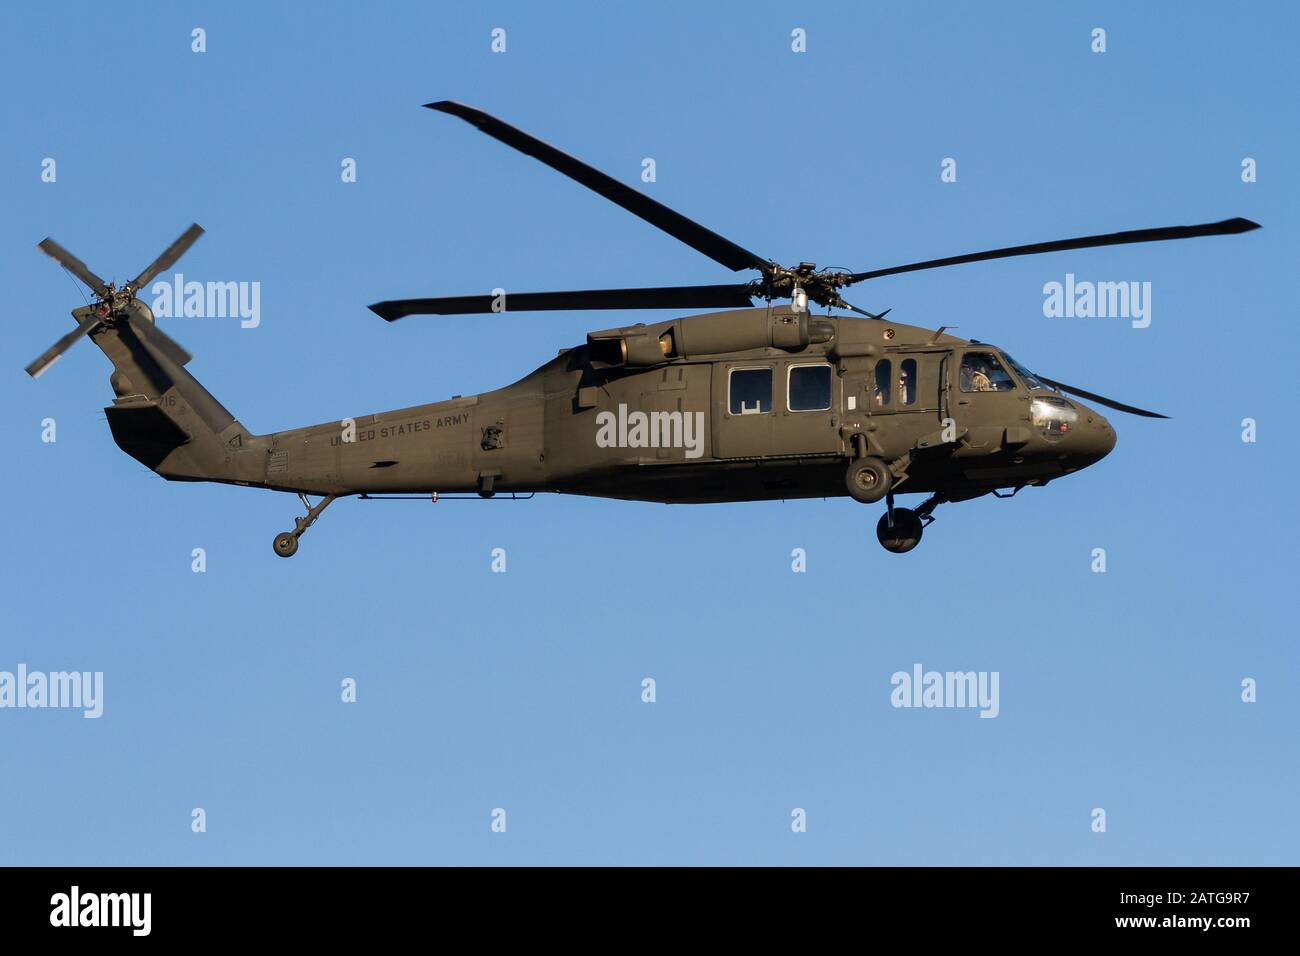 Un elicottero dell'esercito americano Sikorsky UH-60 Black Hawk che arriva a terra presso la base aerea navale di Atsugi, Kanagawa, Giappone. Foto Stock